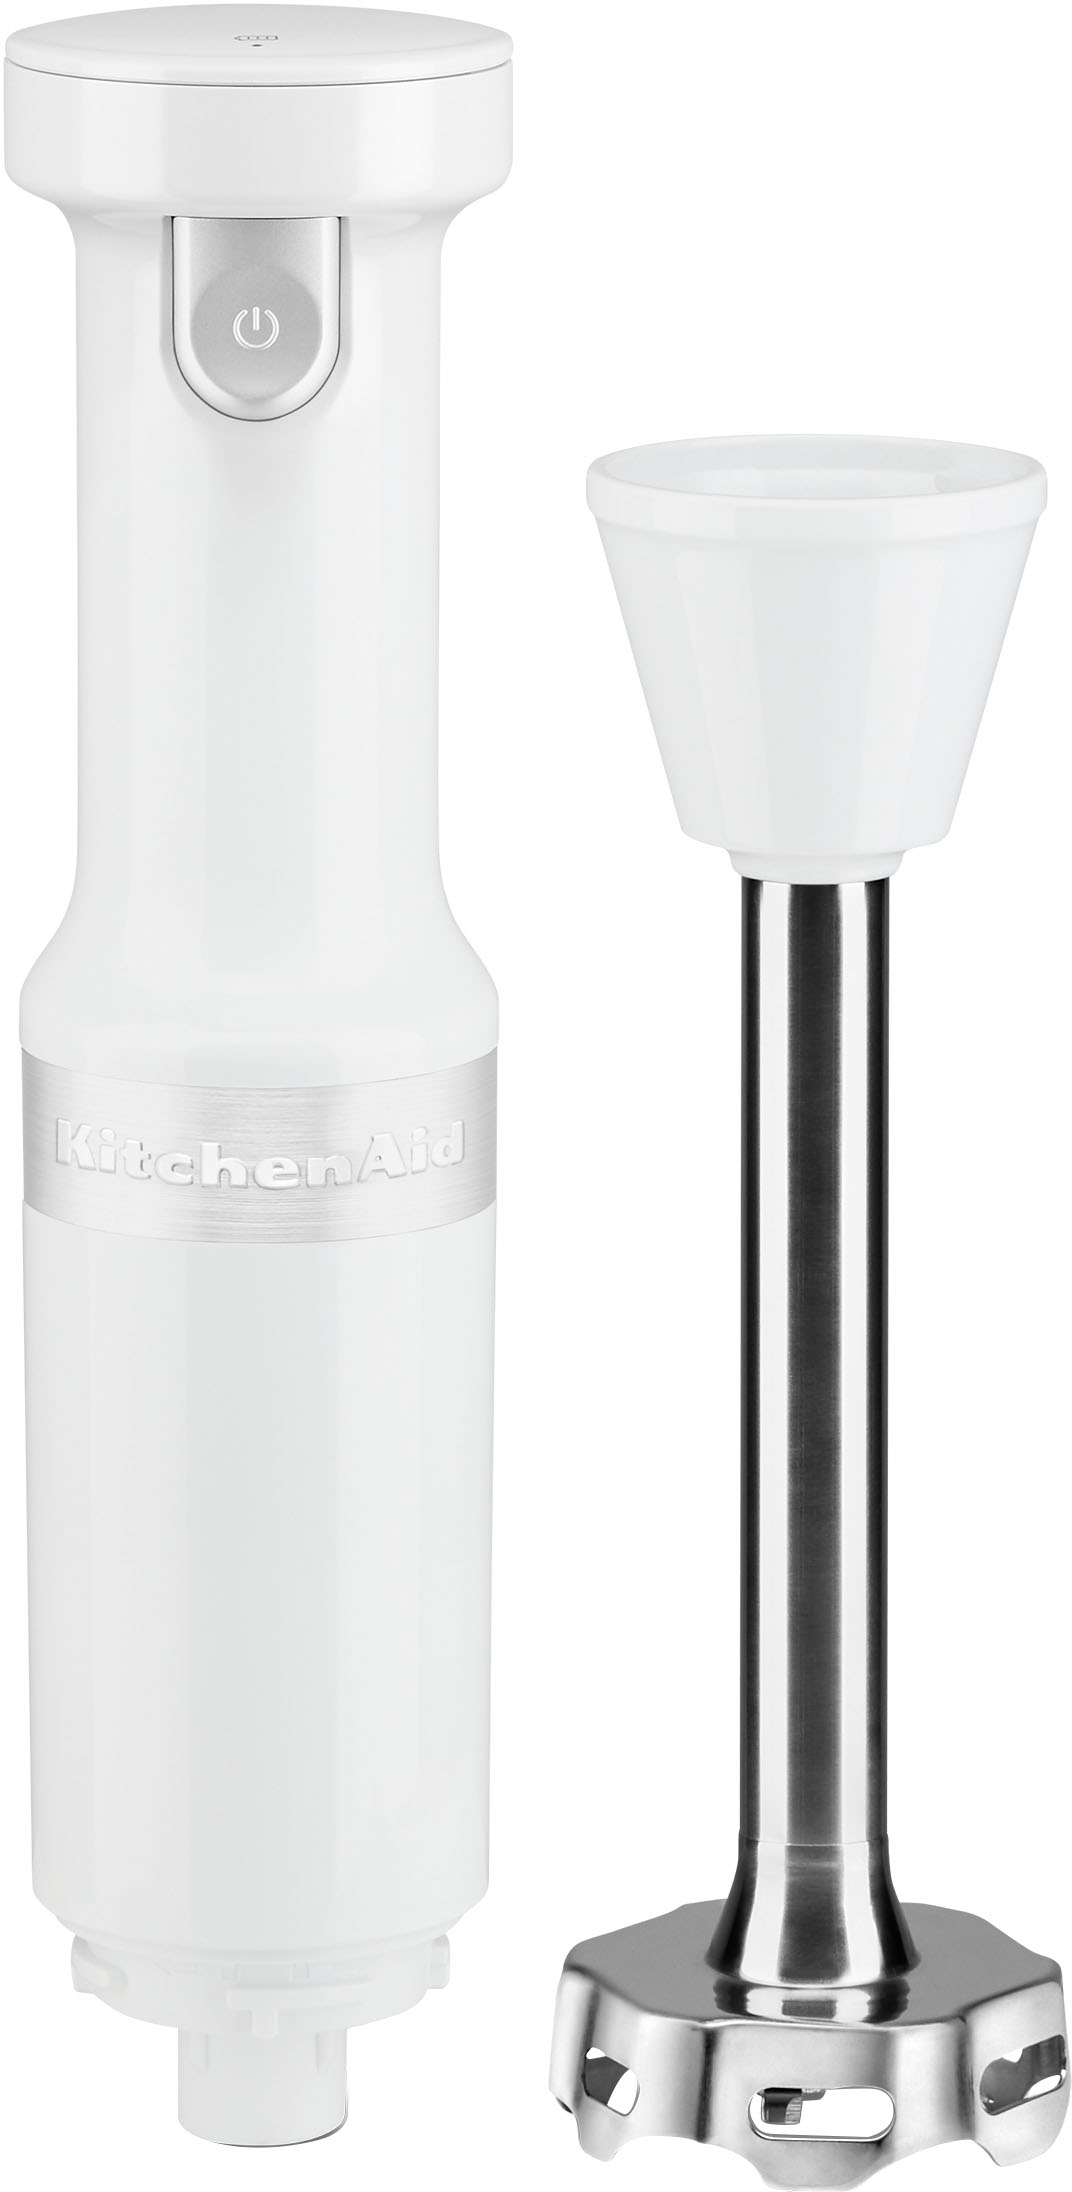 KitchenAid Cordless Variable Speed Hand Blender White KHBBV53WH - Best Buy